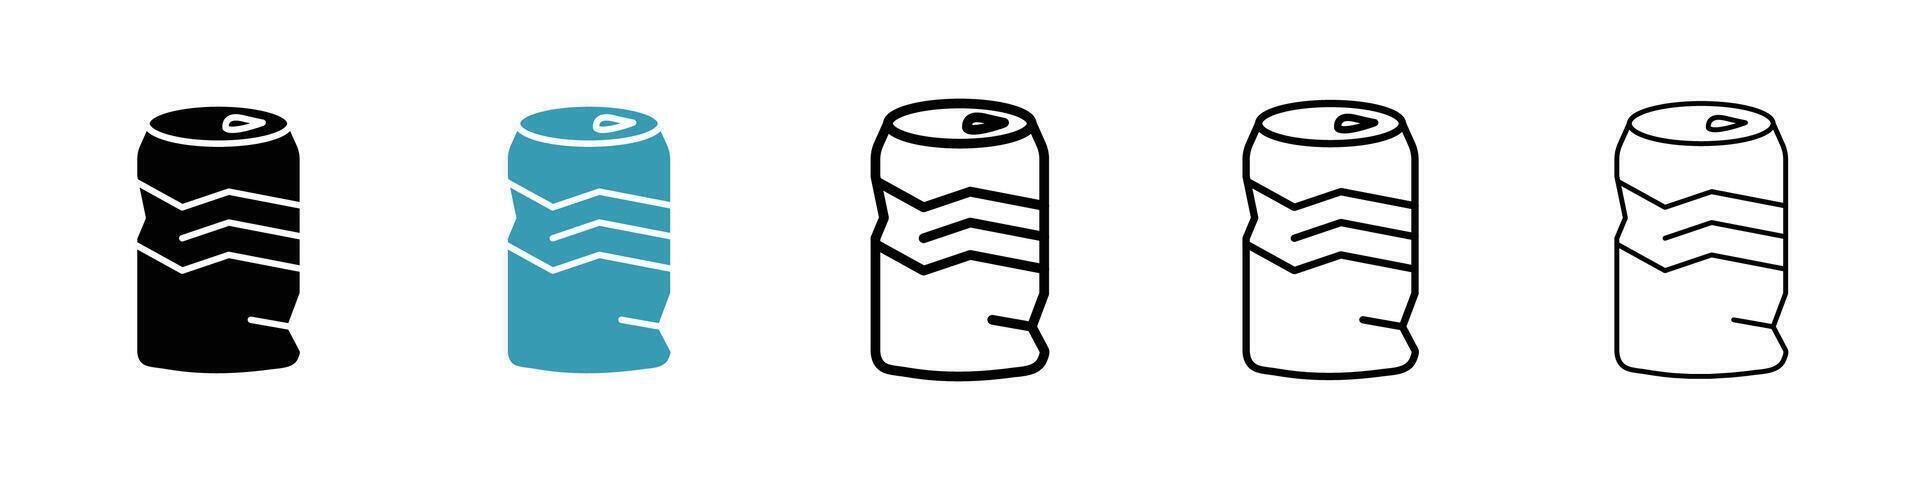 Empty can soda icon vector